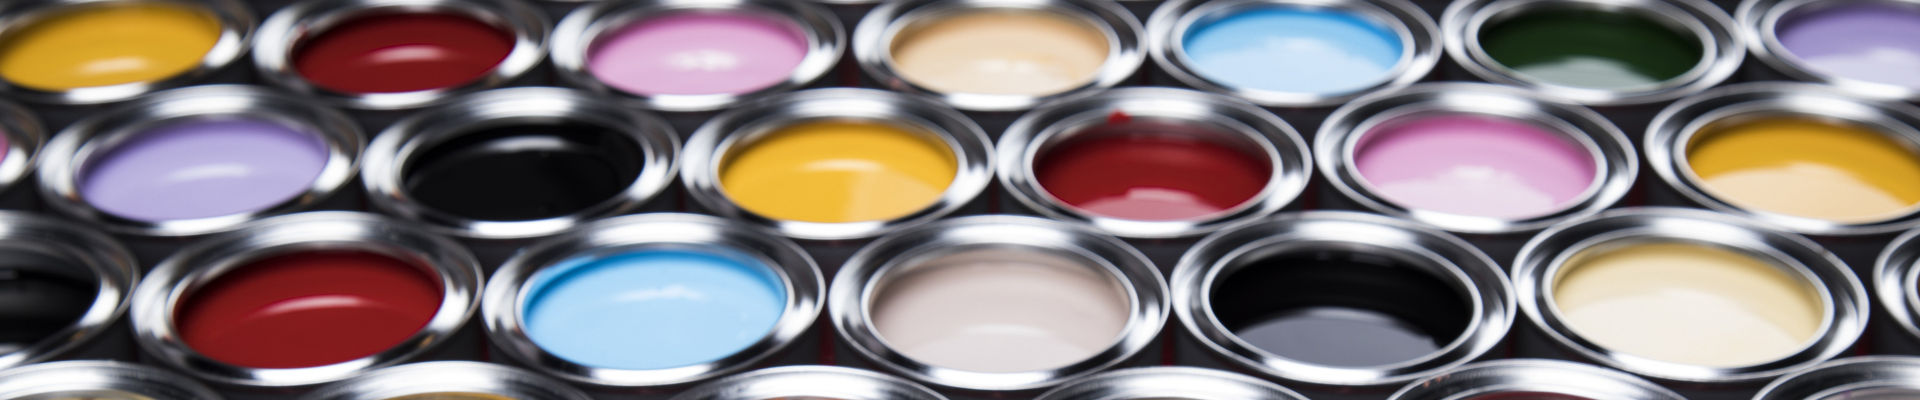 様々な色の塗料を含む、多数のオープン塗料缶